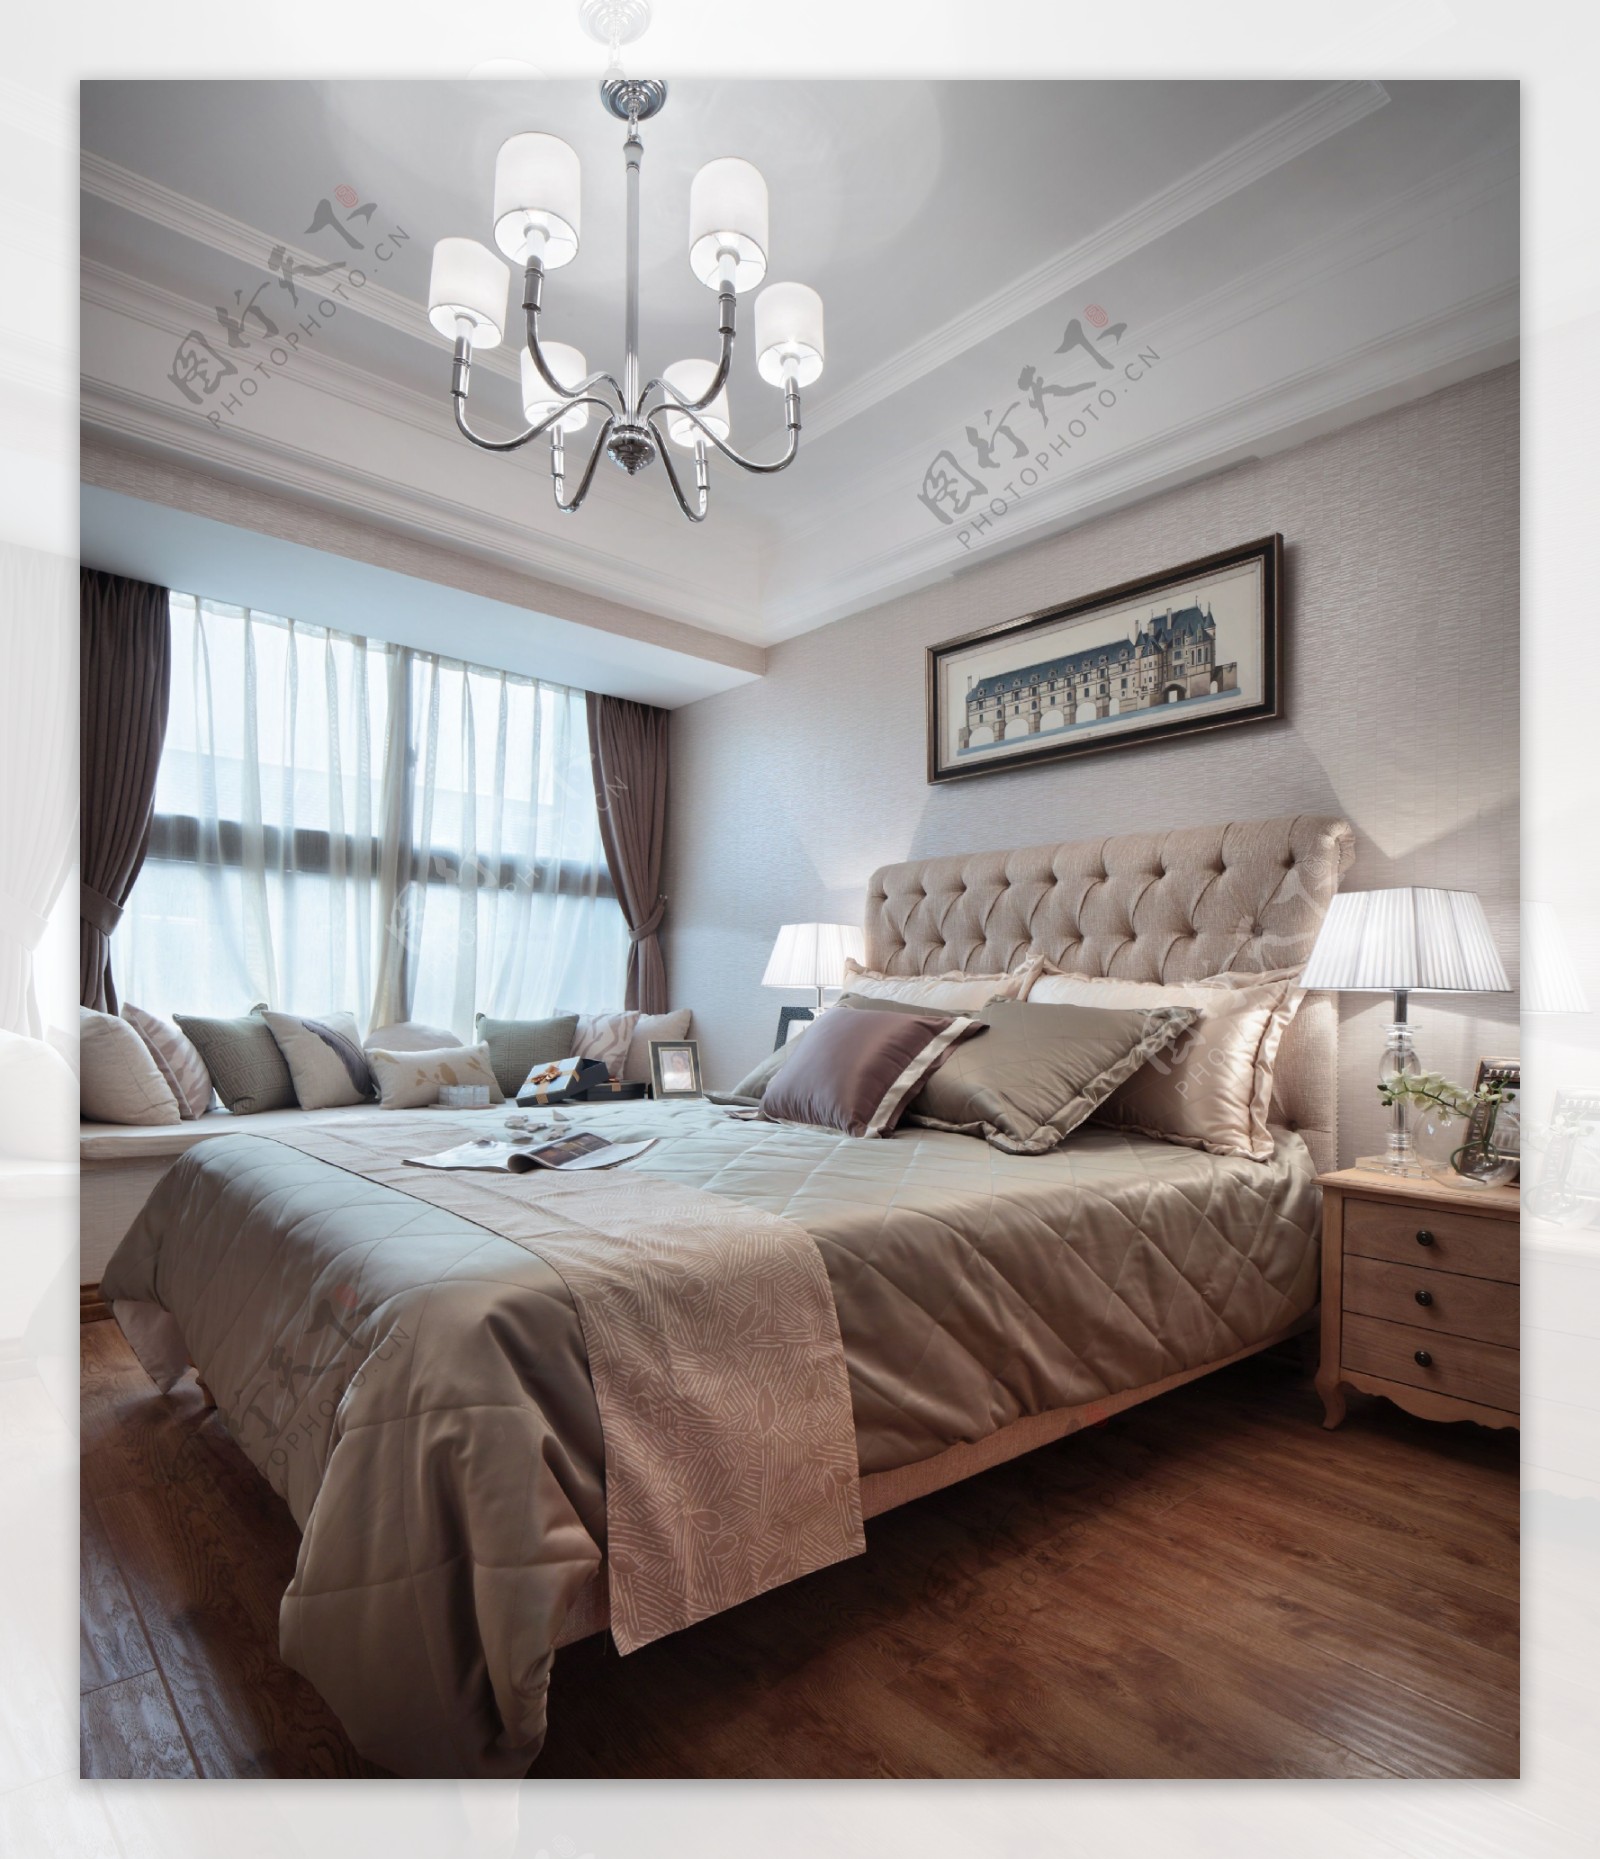 现代时尚卧室素色床品室内装修效果图